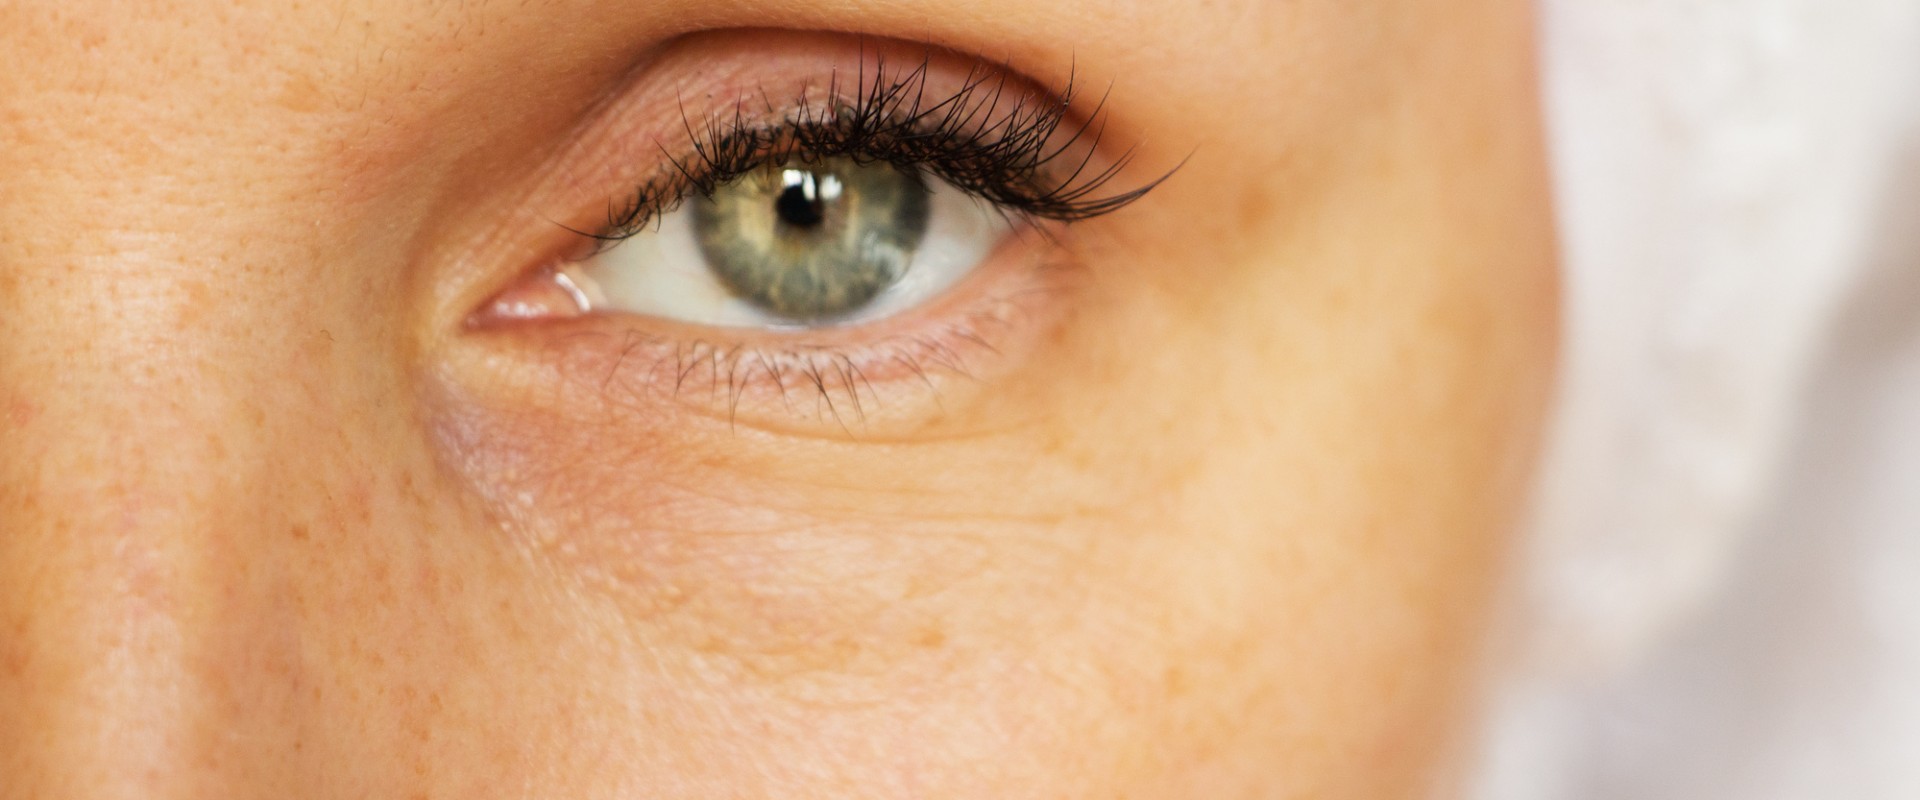 Do under eye fillers prevent aging?